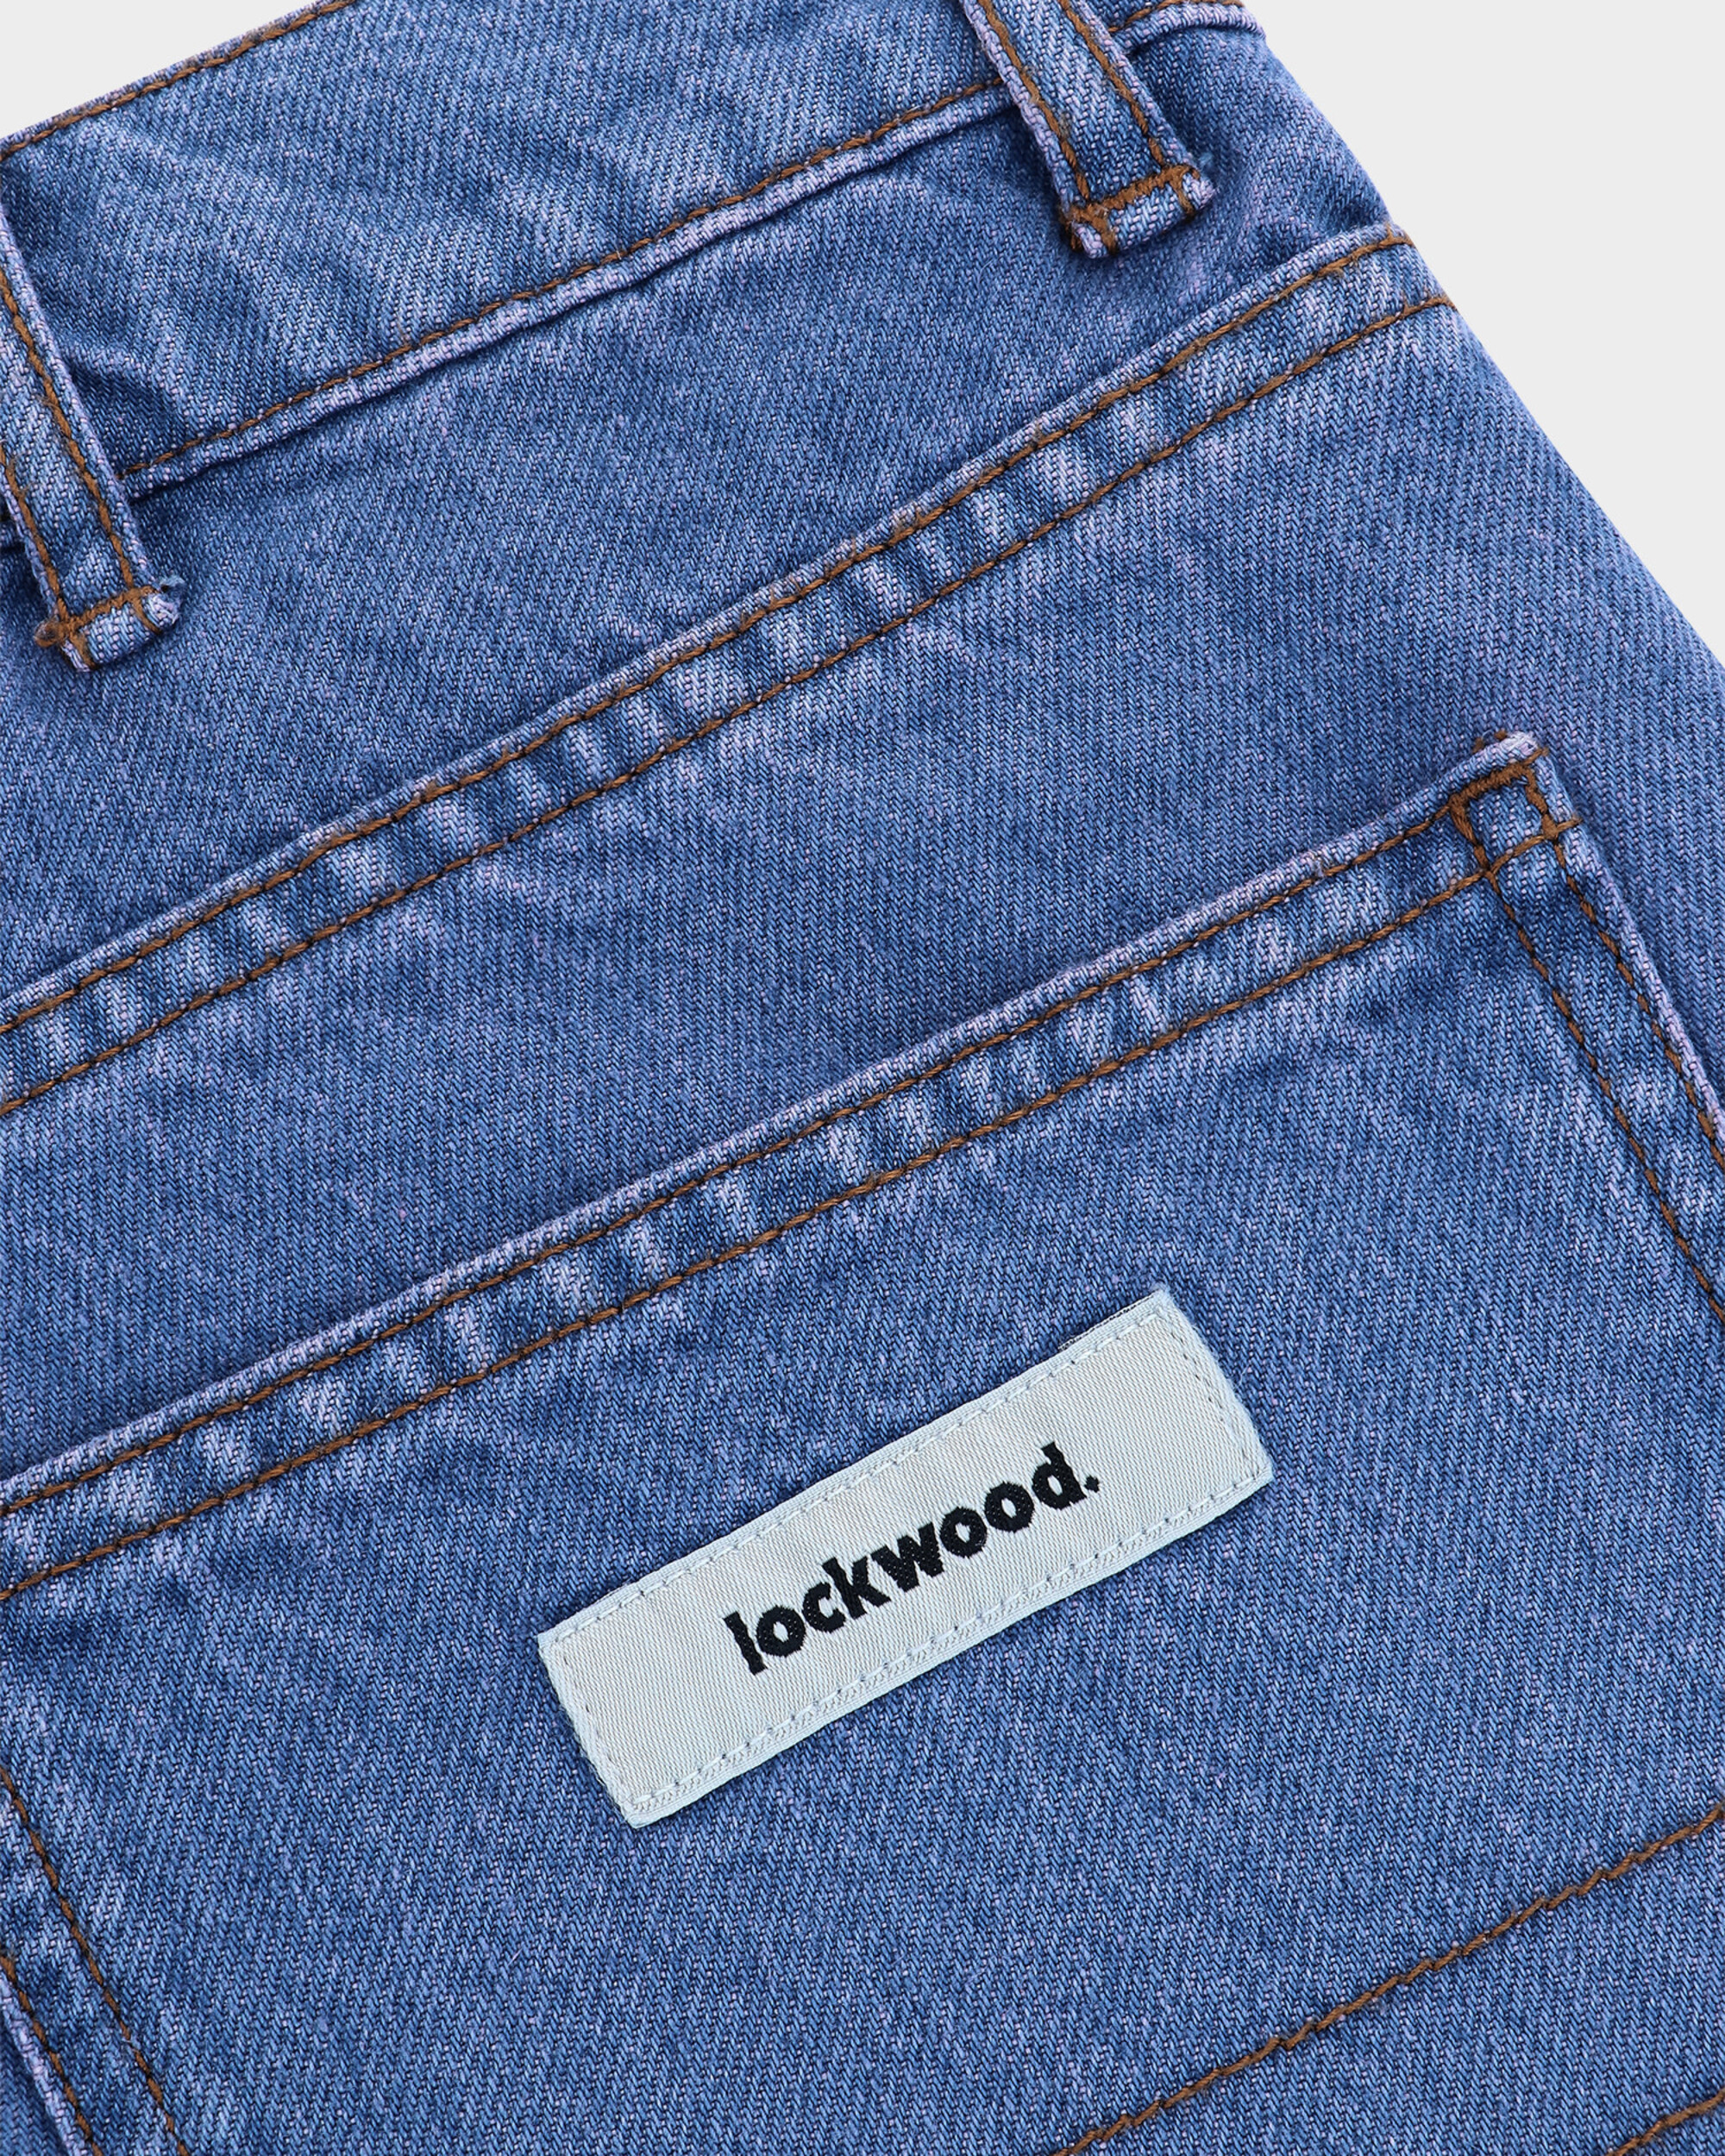 Lockwood Straight Baggy Jeans - Sad Blue